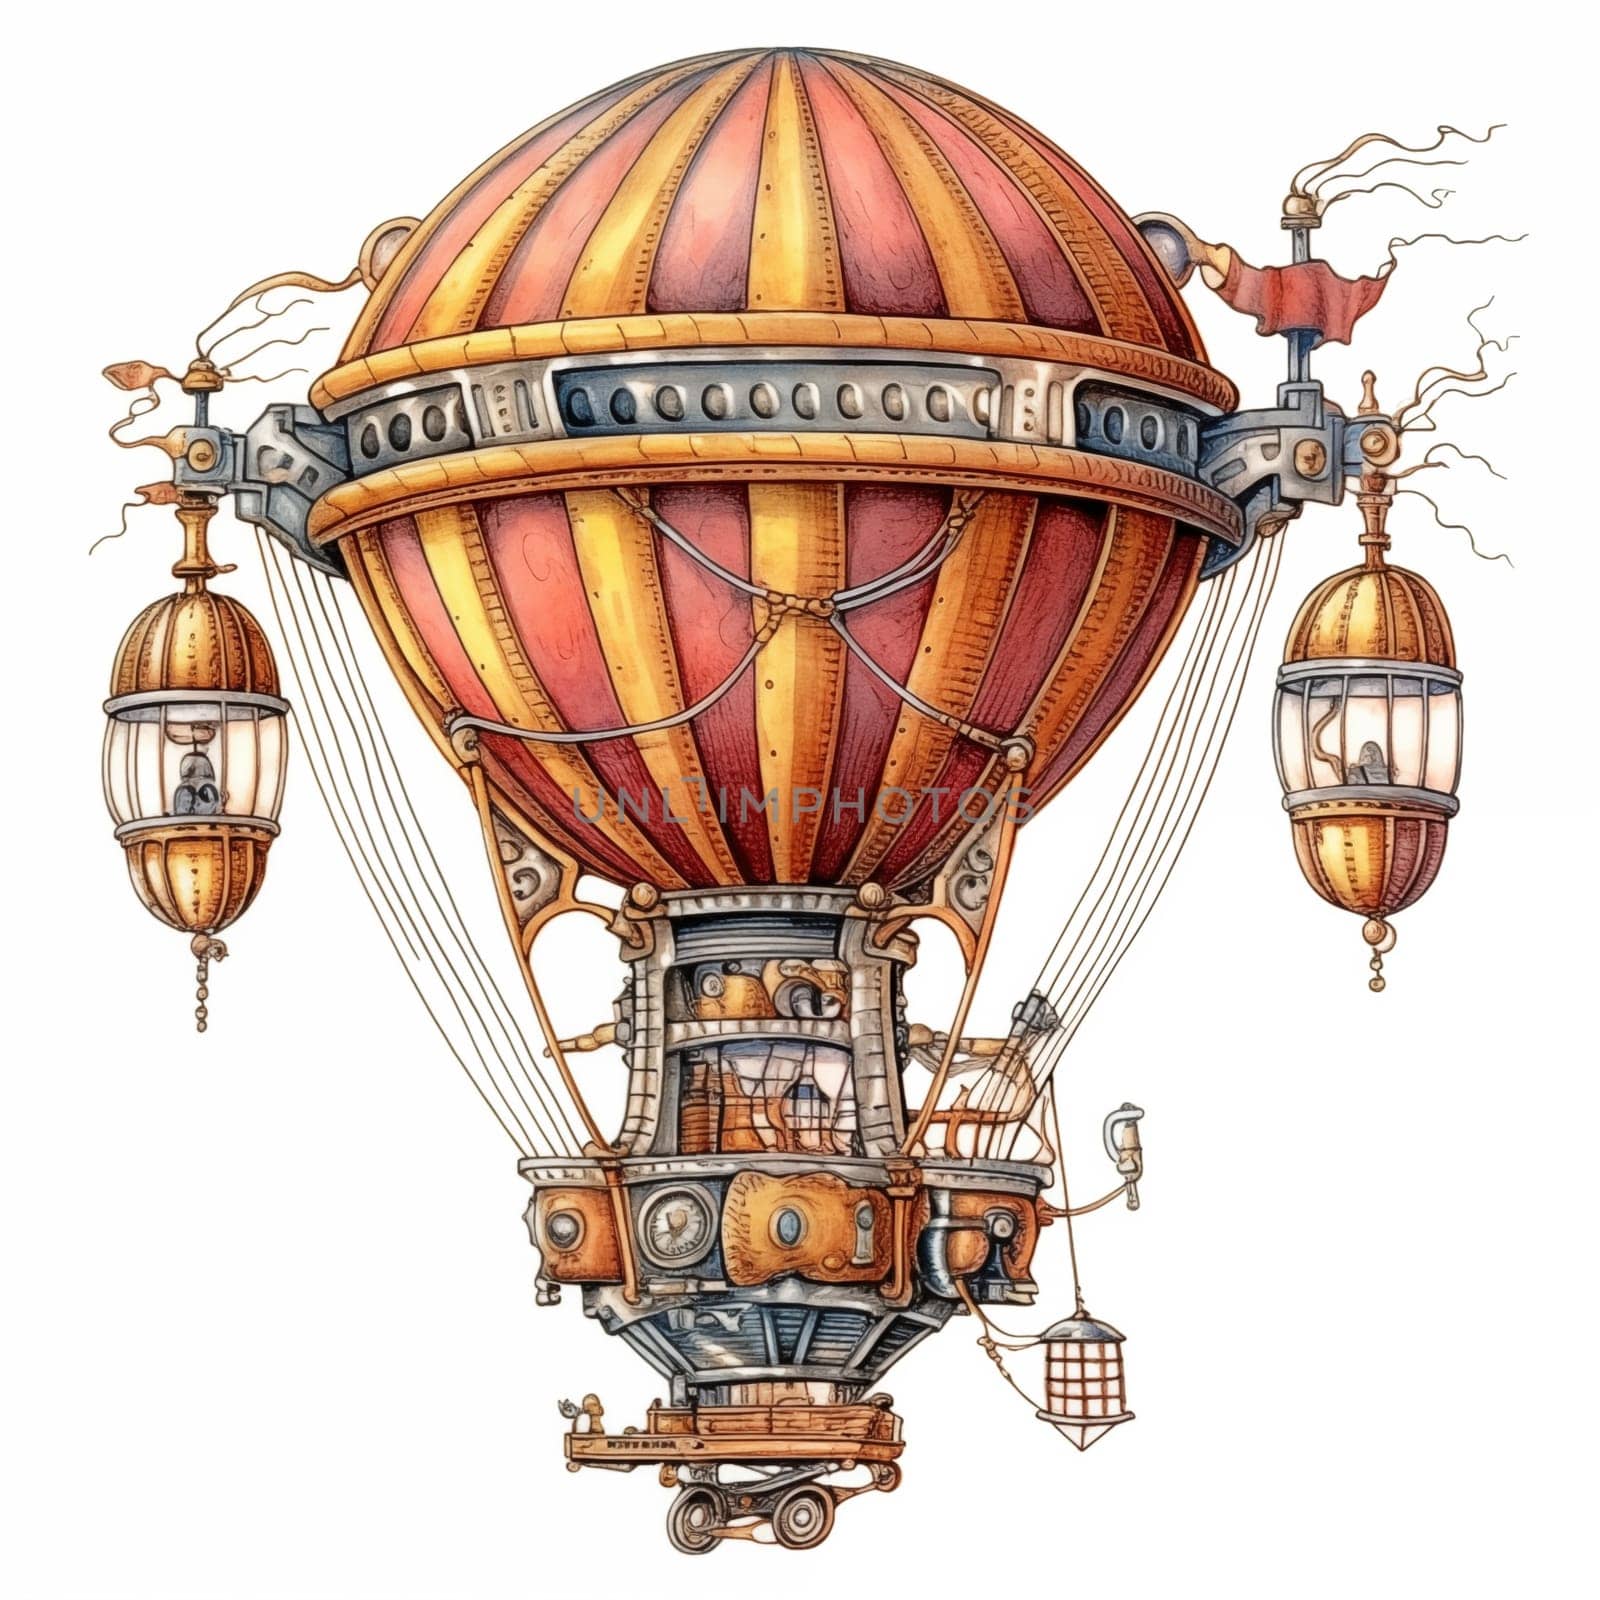 Airship Steampunk Retro. Air Balloon Illustration on White Background.